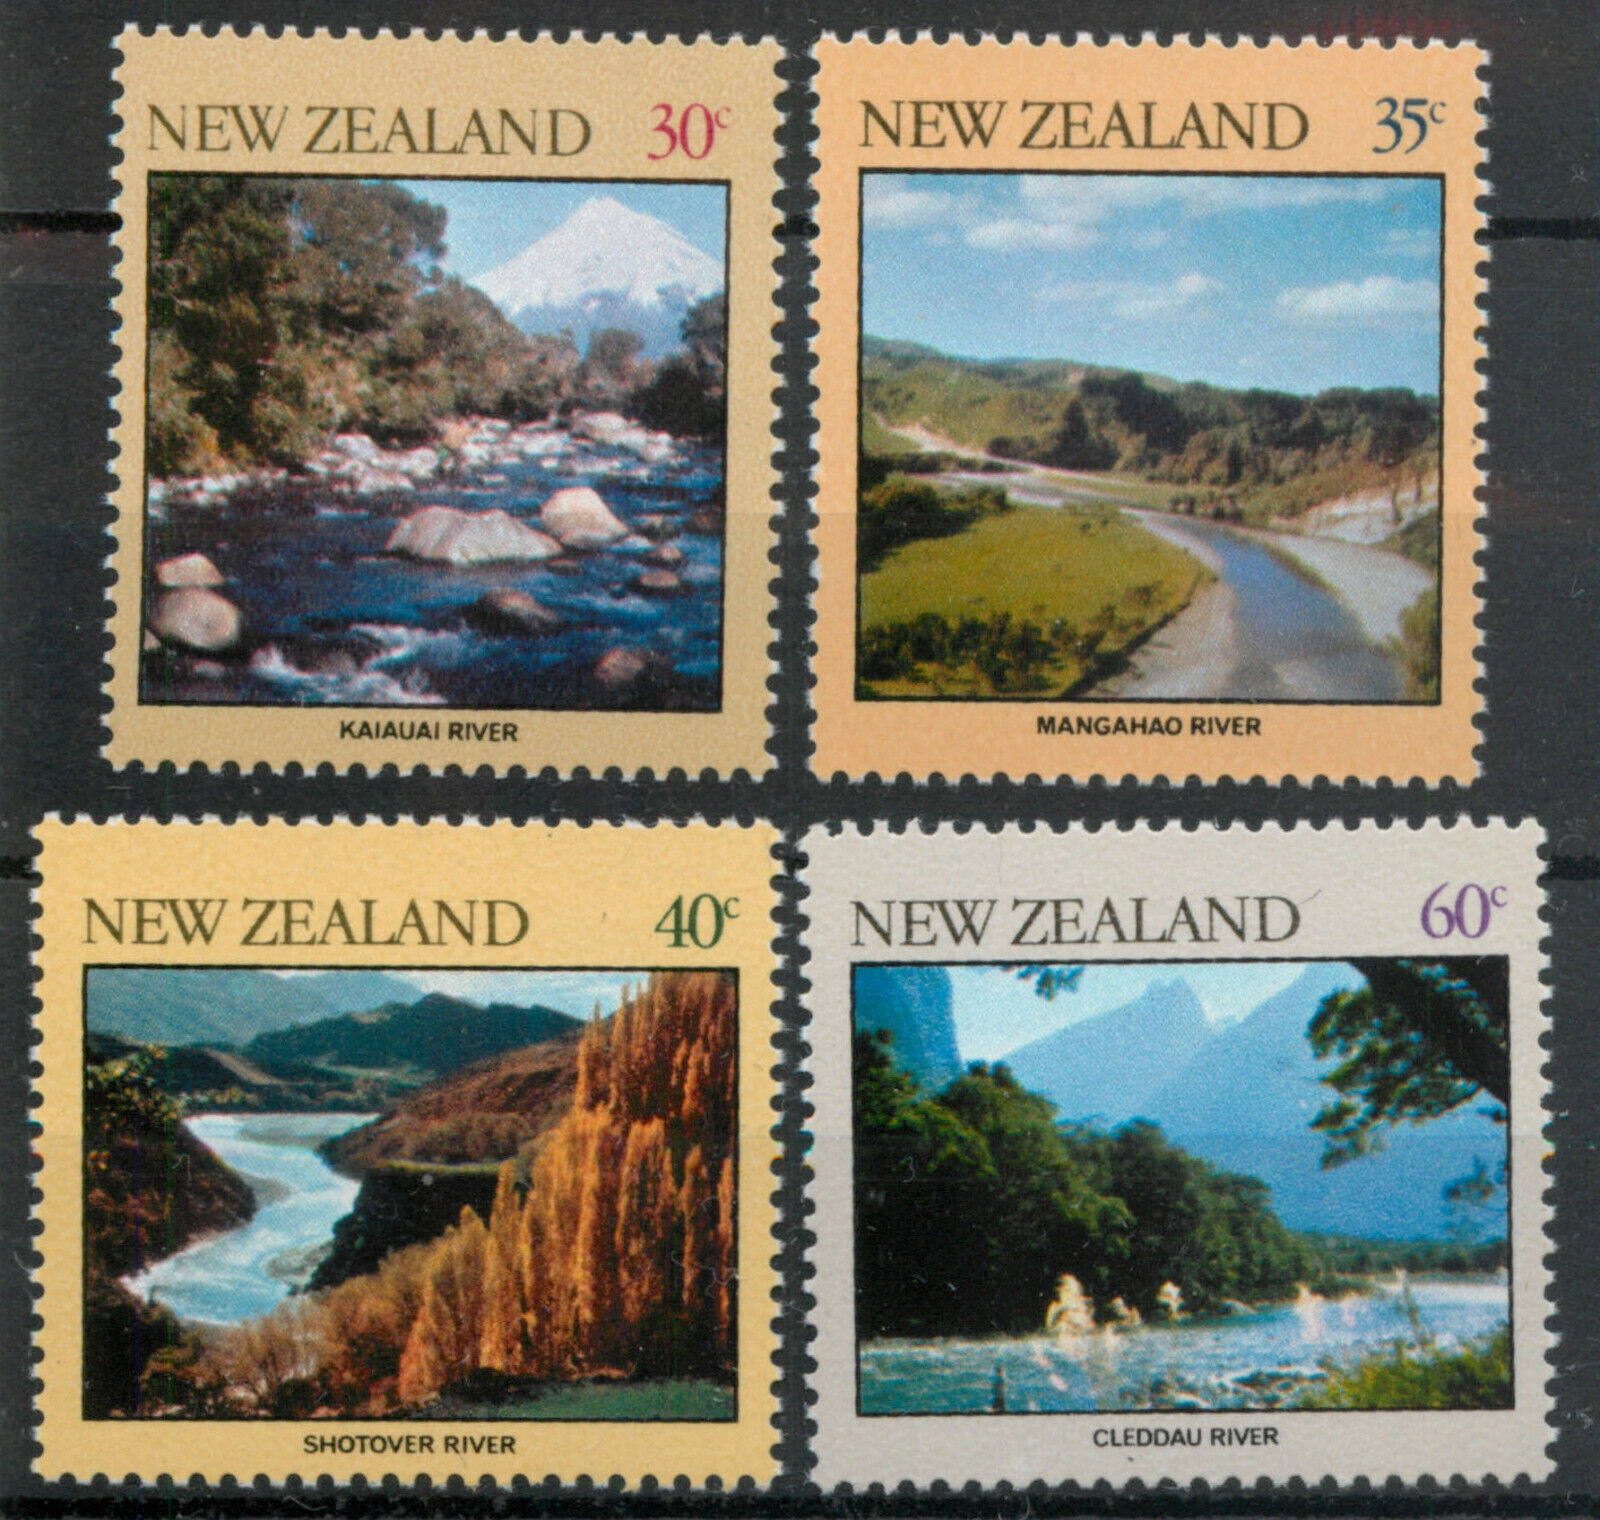 New Zealand NZ 1981 River Scenes set SG 1243-1246 MNH mint *COMB